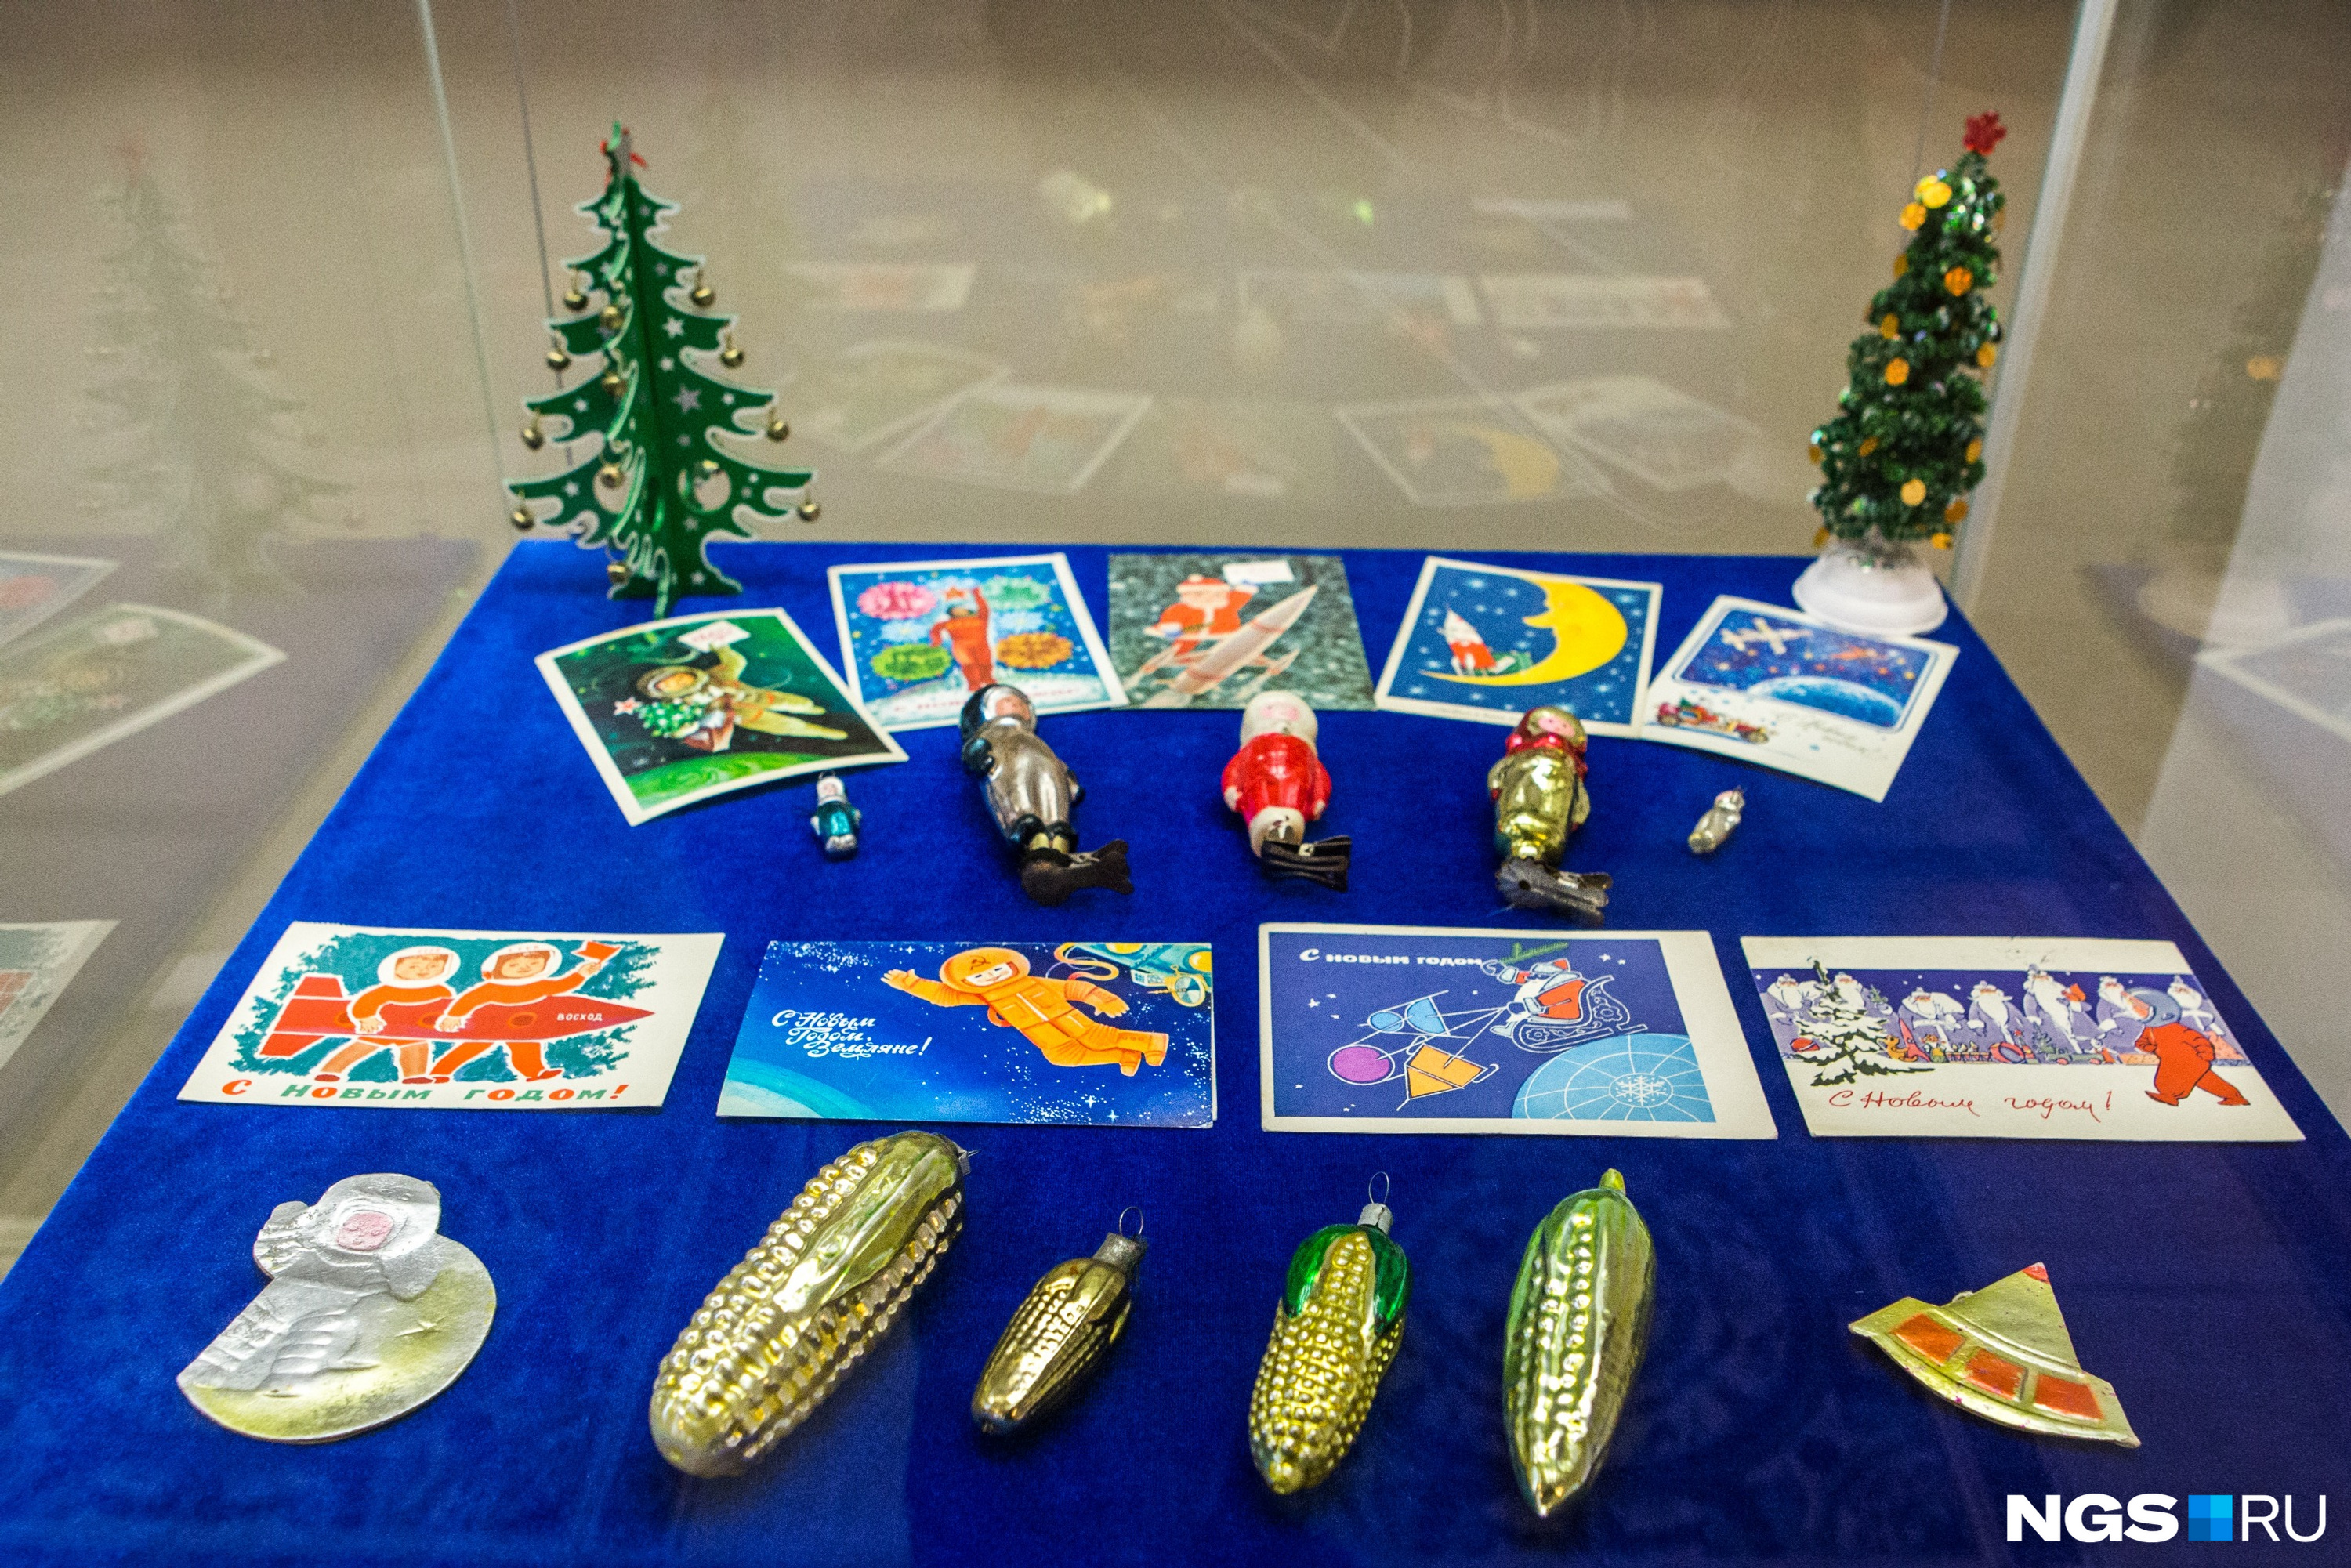 Символ хрущёвской эпохи — кукуруза — воплотилась и в праздничном декоре